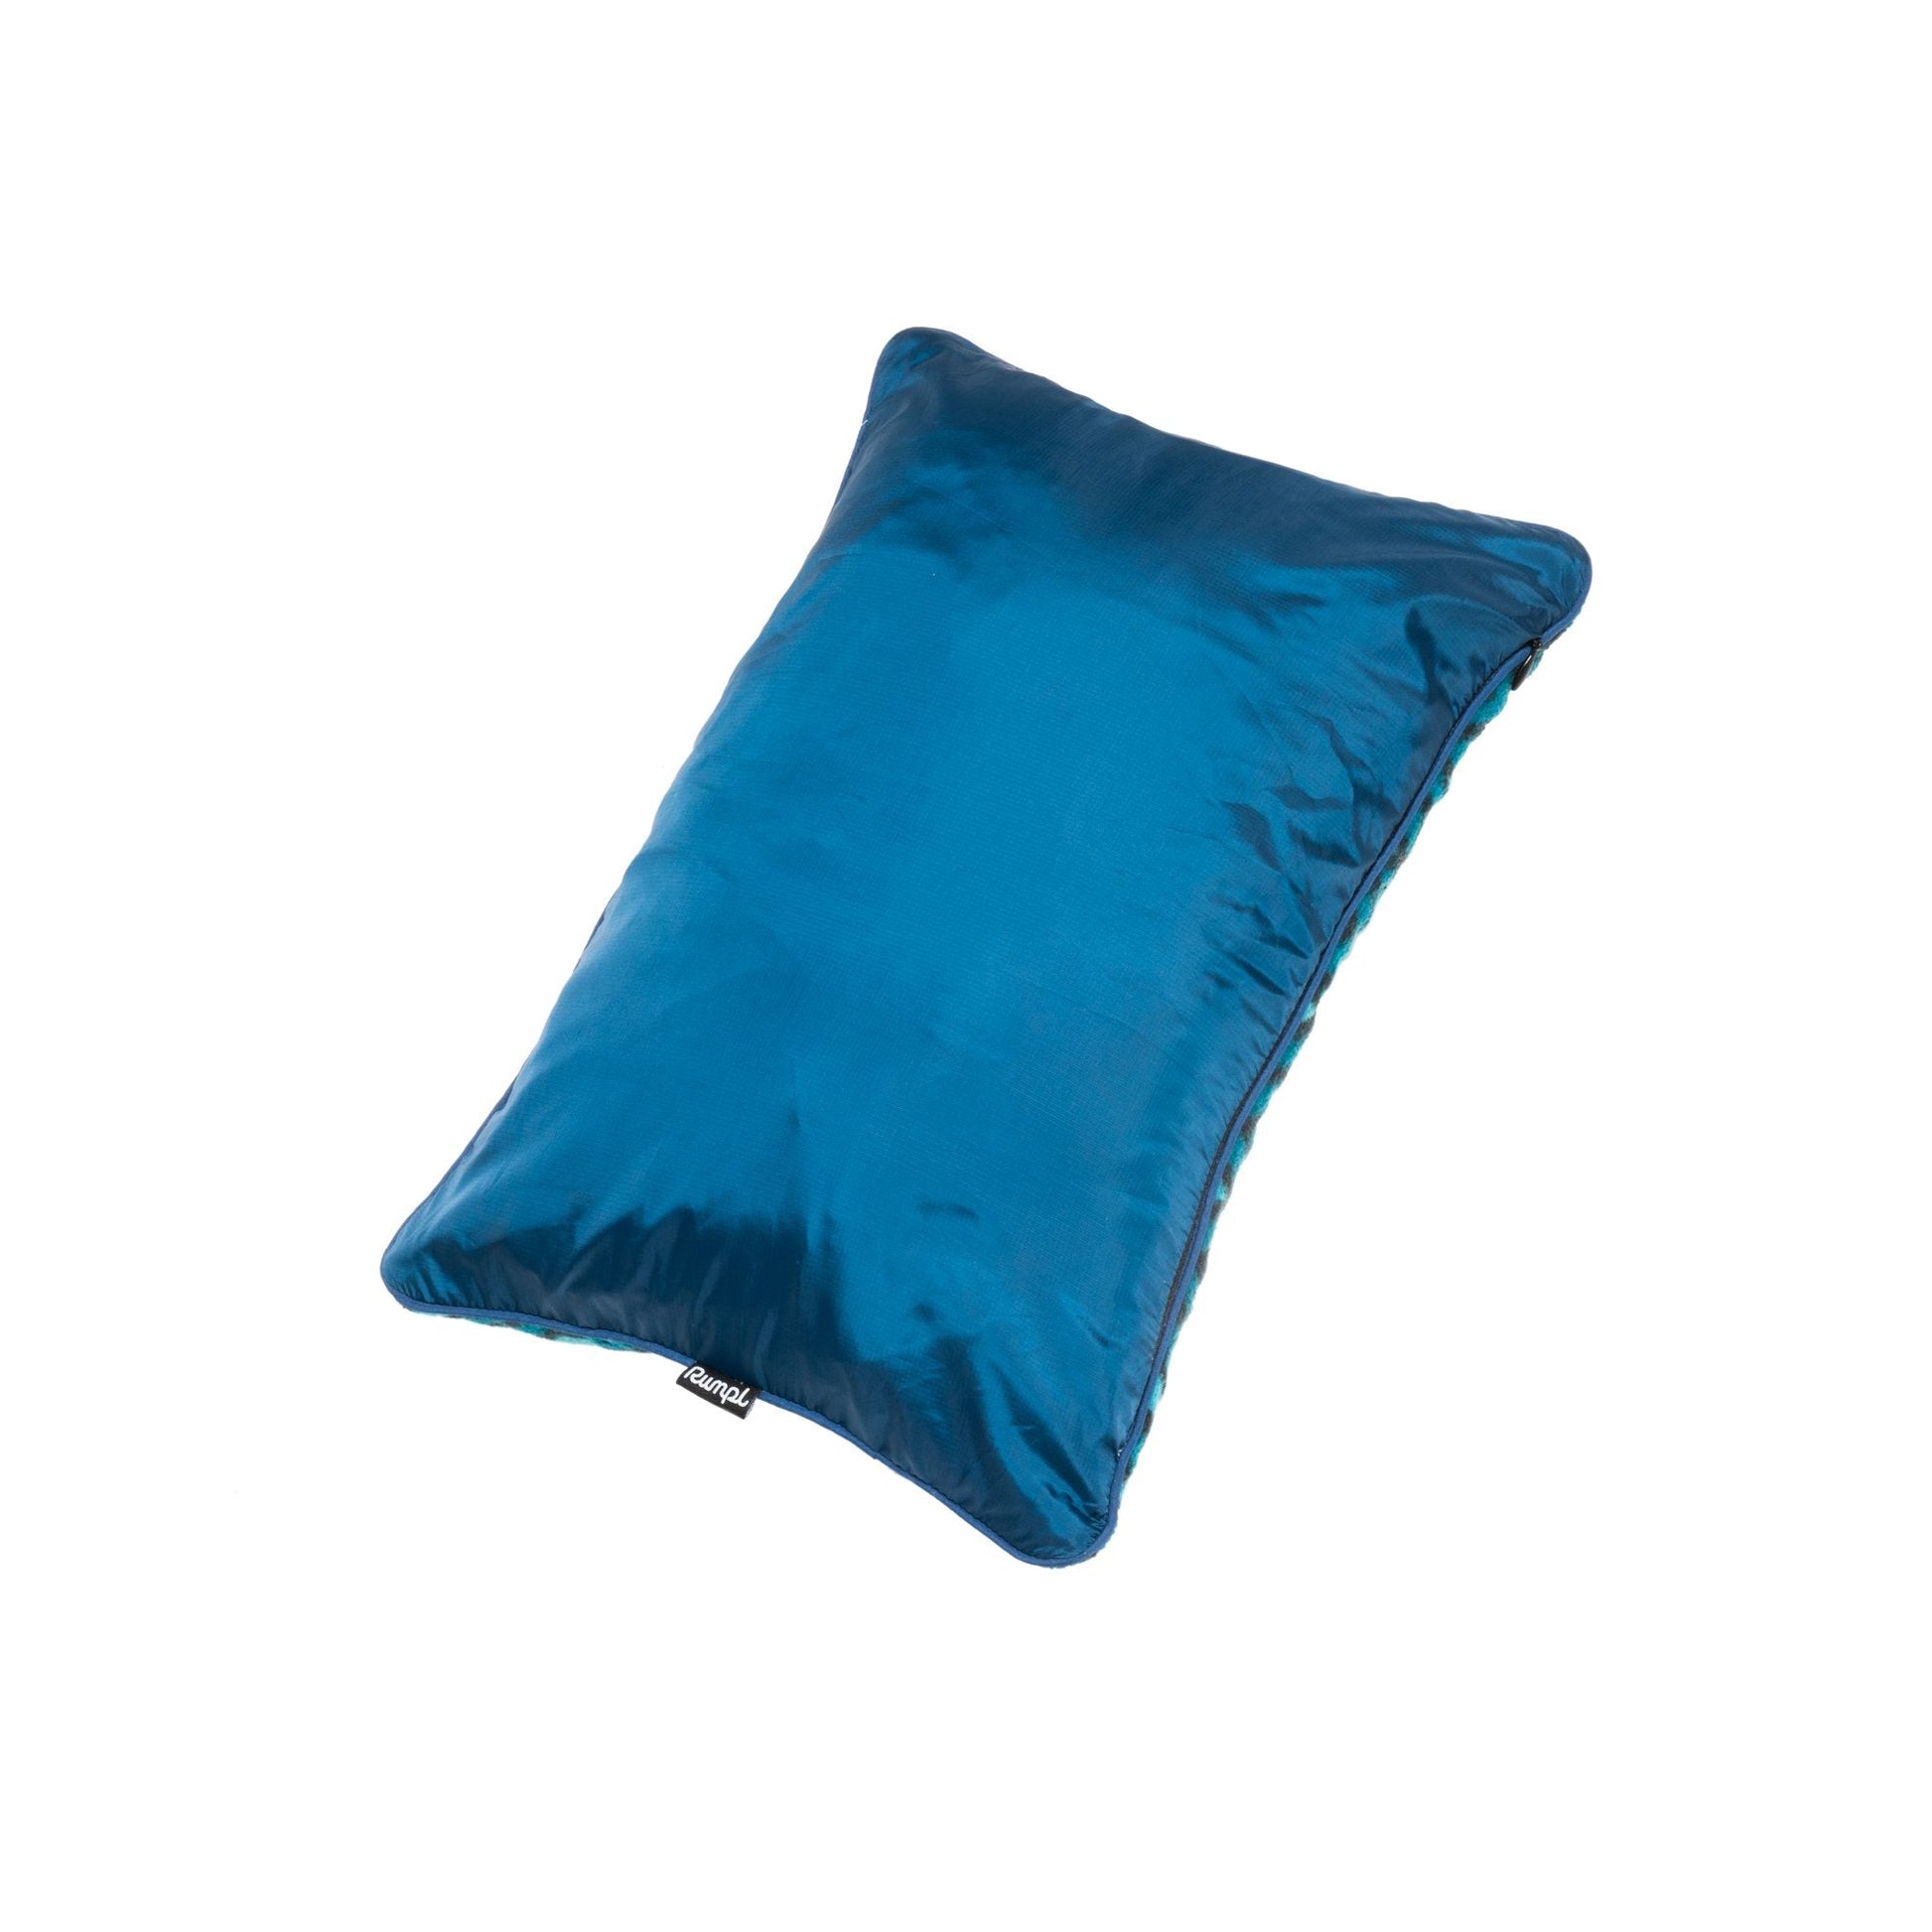 https://www.rumpl.com/cdn/shop/products/rumpl-stuffable-pillow-one-size-the-stuffable-pillowcase-deepwater-tosp-dpw-o-13997295829064_1946x.jpg?v=1660904333